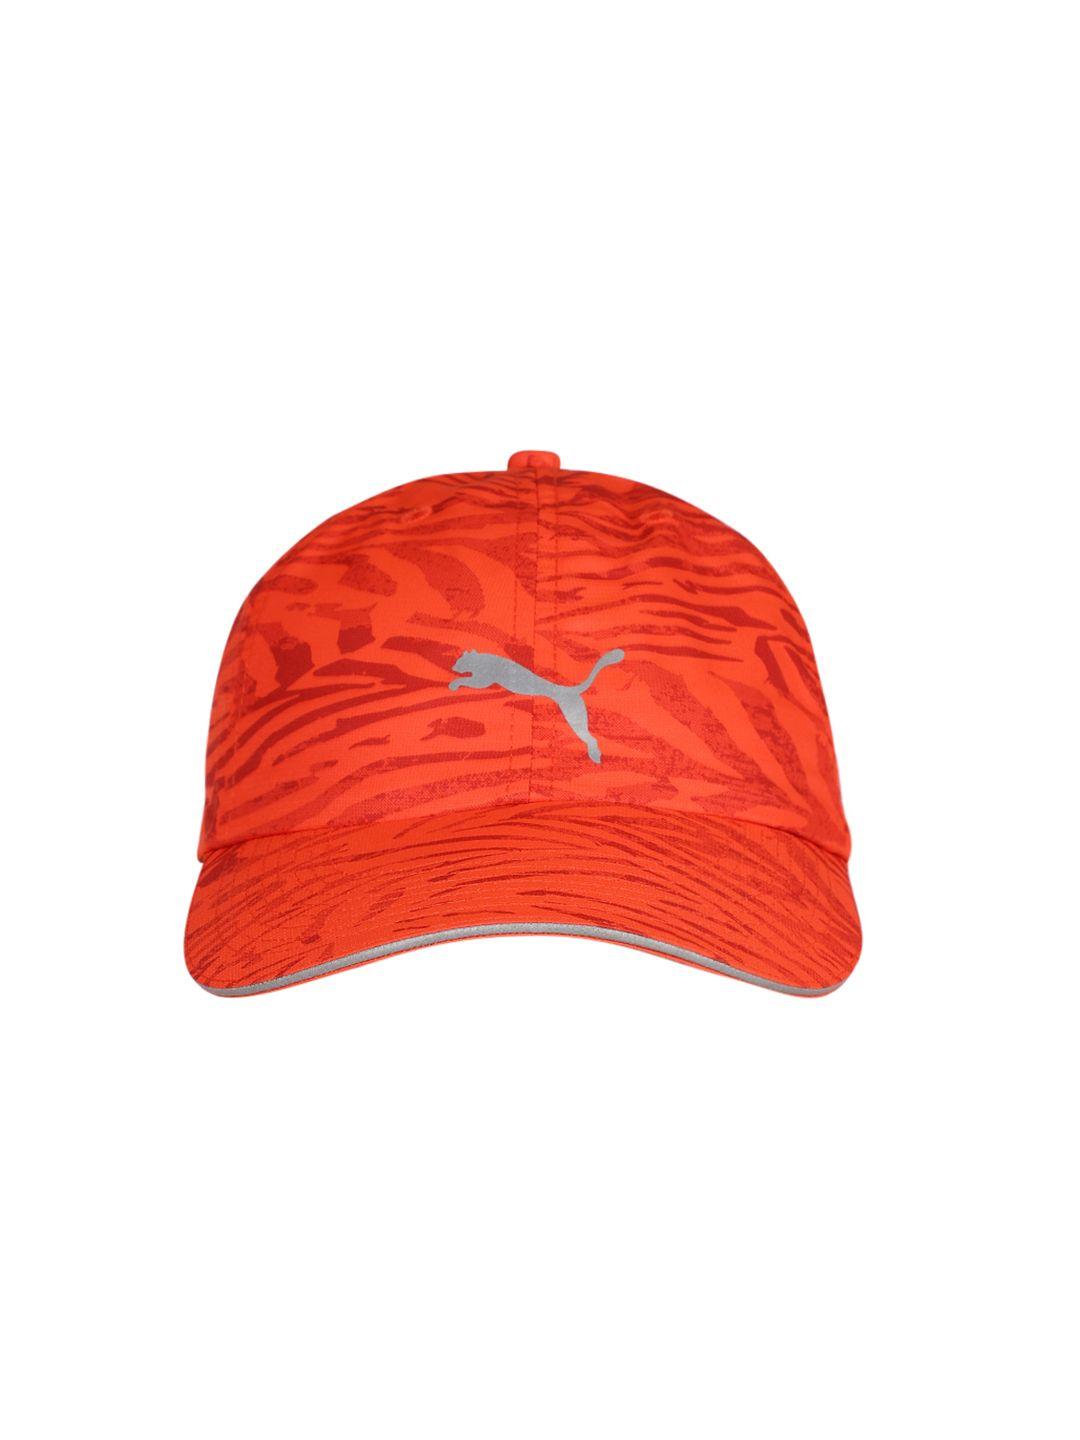 puma unisex orange printed snapback cap